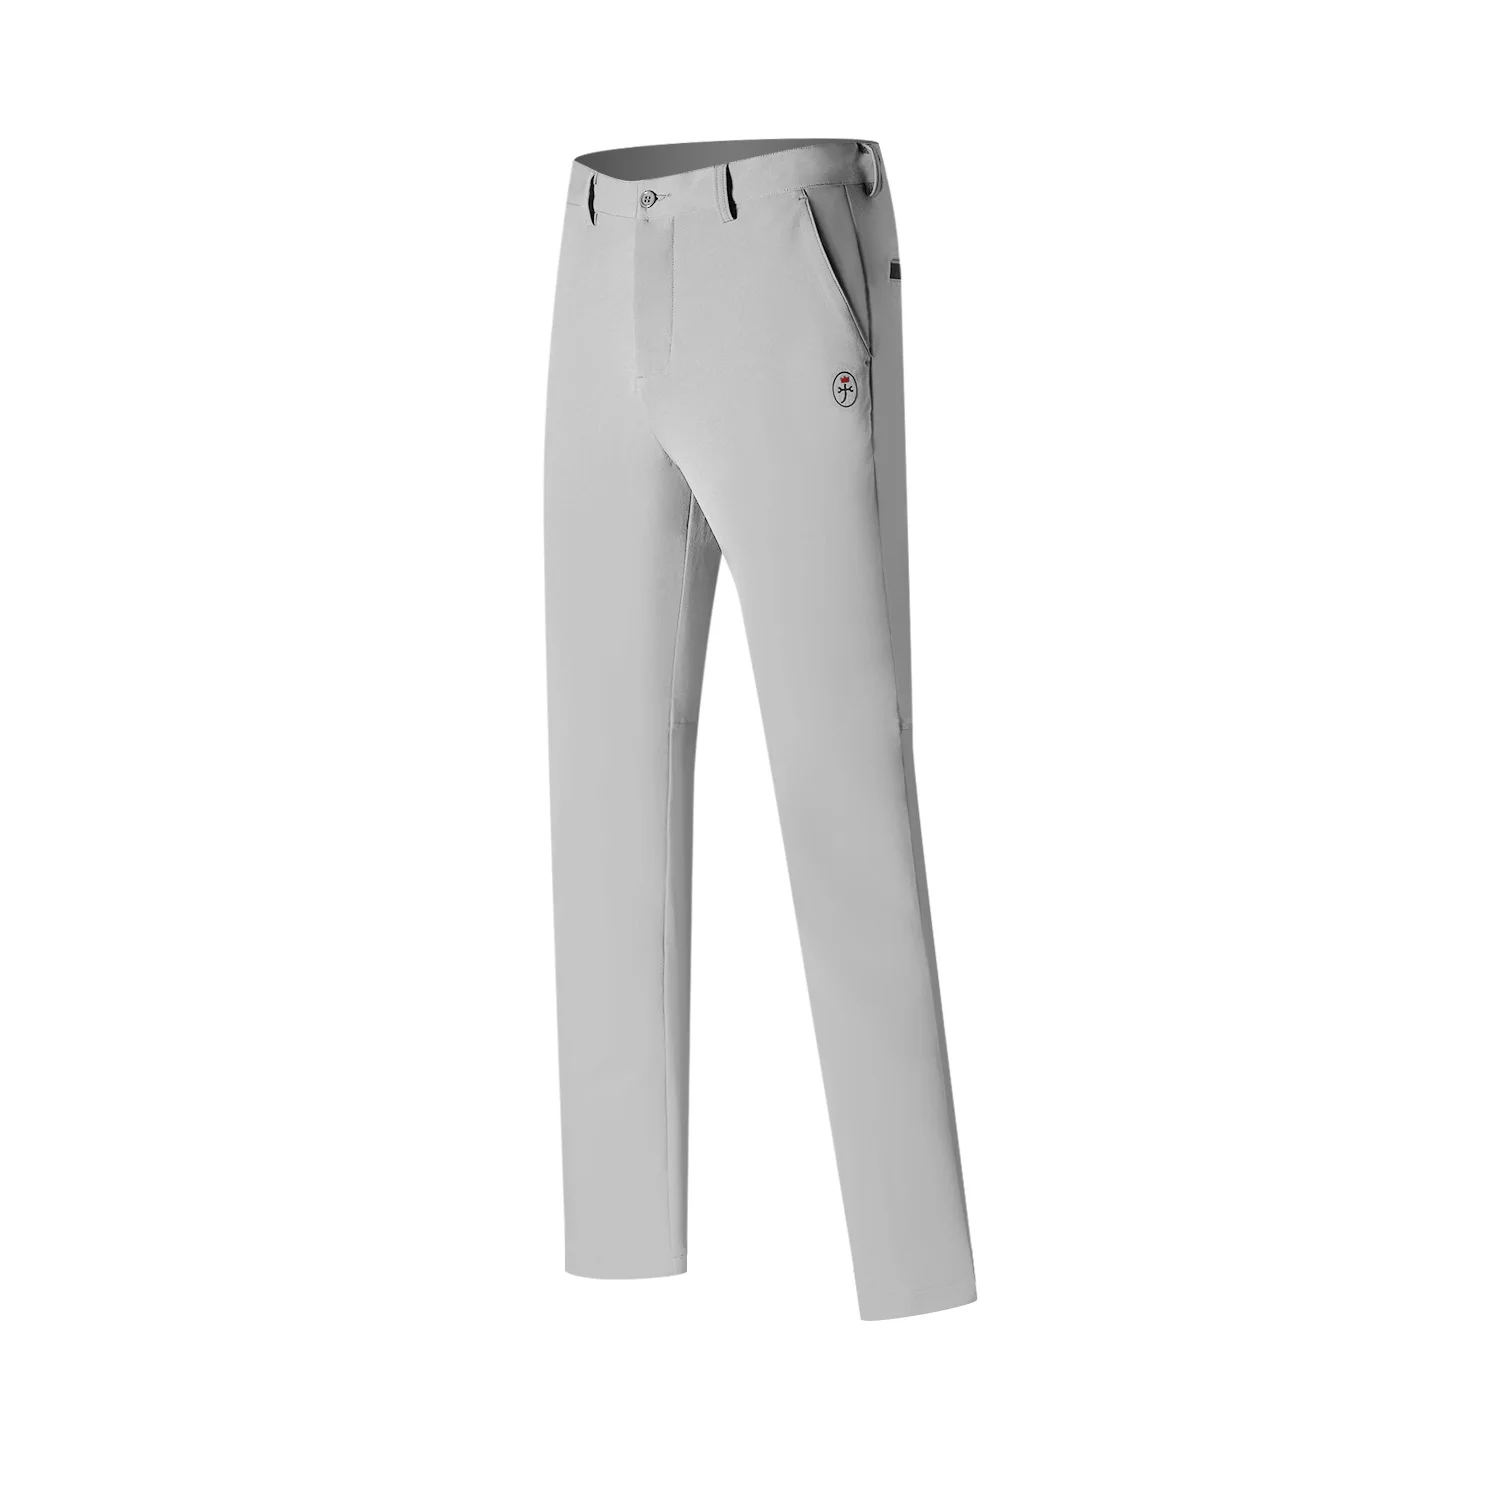 Q Новые C Pai golf осенние и зимние плотные брюки Одежда для гольфа спортивные мужские брюки повседневные брюки - Цвет: Серый